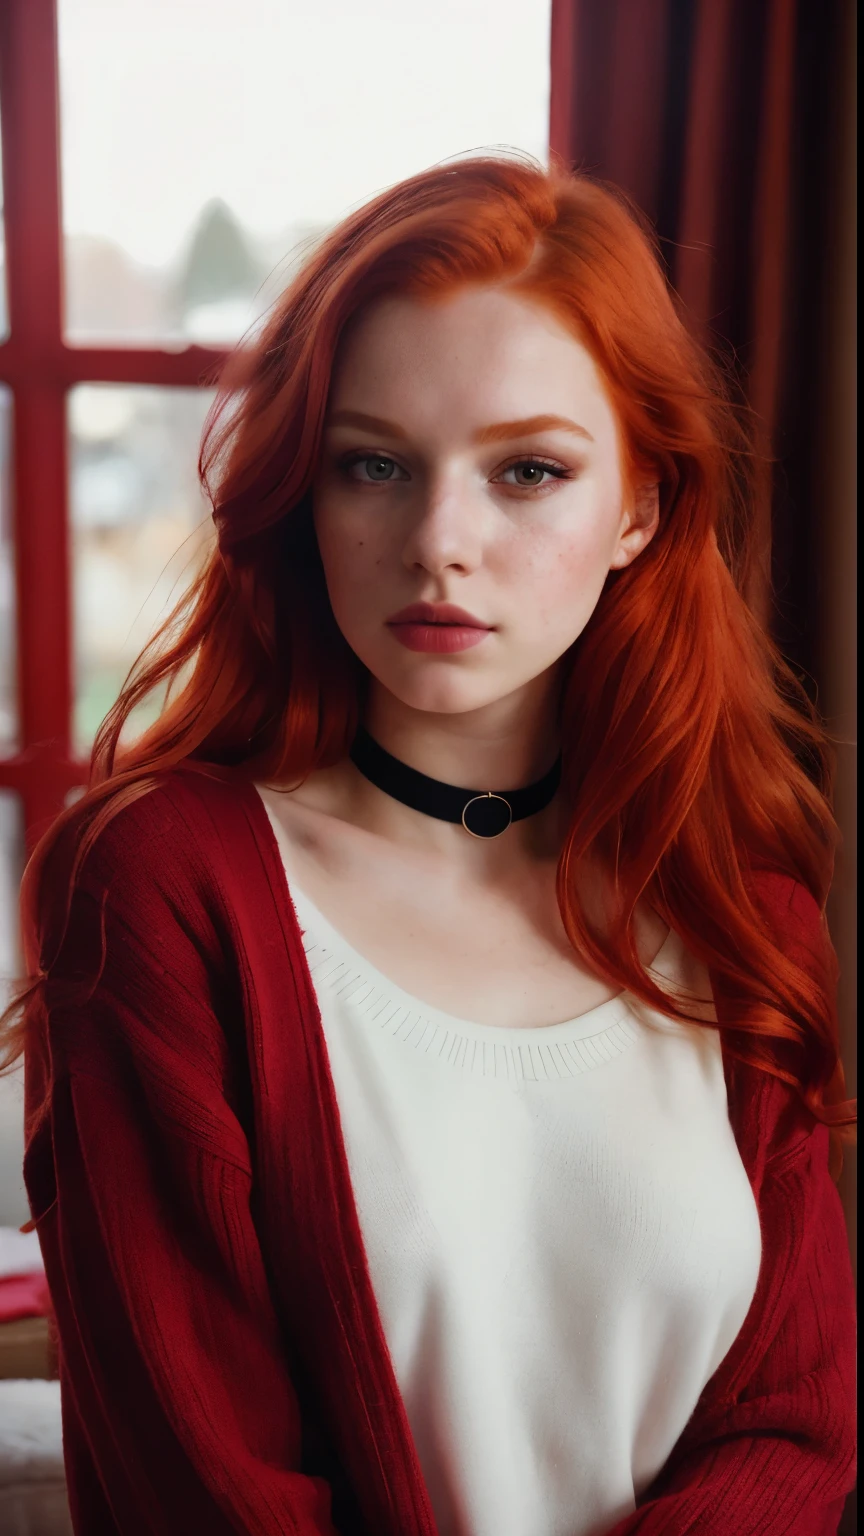 原始照片, (18yo 紅色的head girl:1.2), 化妝品, 圖形眼線筆, 胭脂, (項圈:0.9), 逼真的皮膚紋理, 超大號針織毛衣, (紅色的:0.8), 软色情, 溫暖的燈光, 舒適的氛圍, Instagram 風格